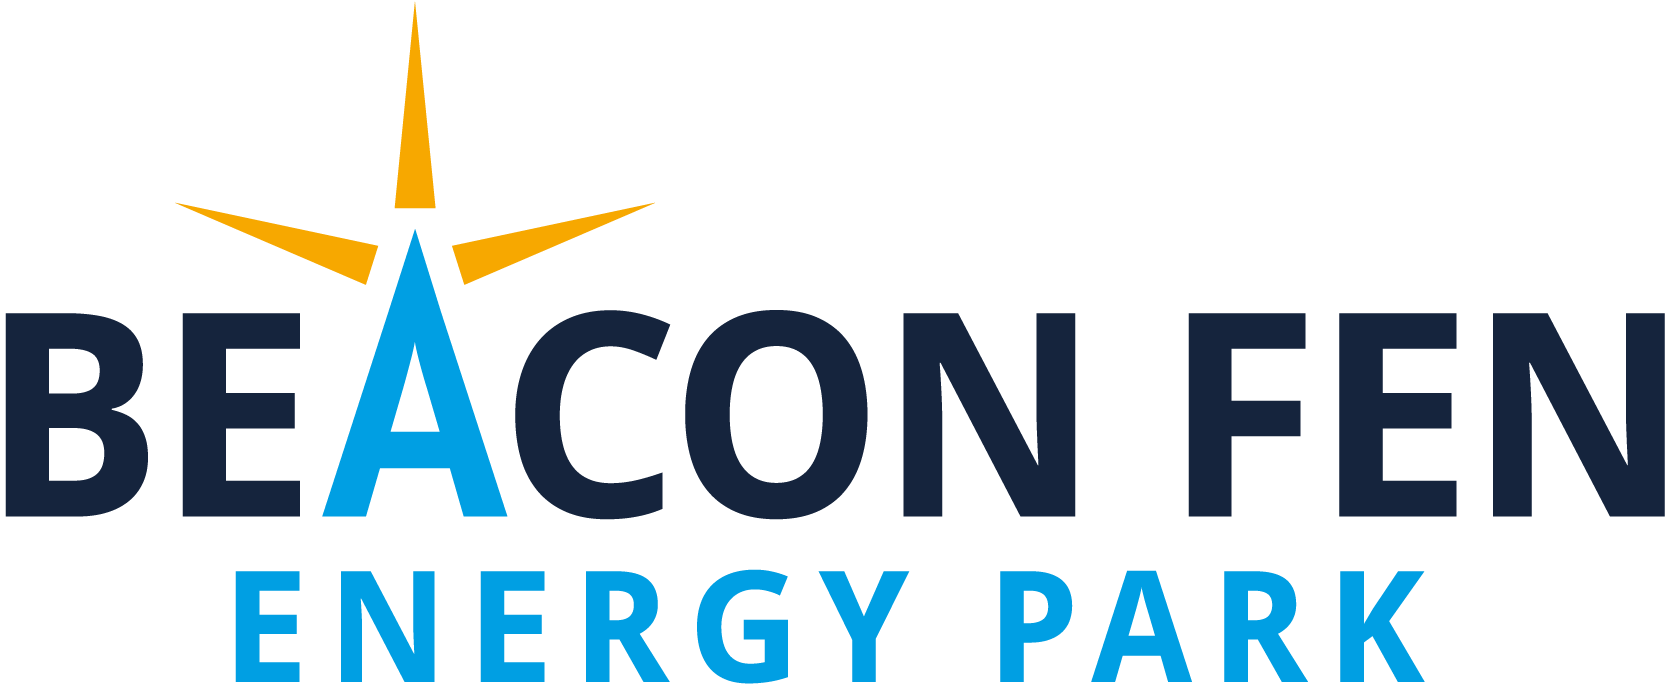 Beacon Fen Logo